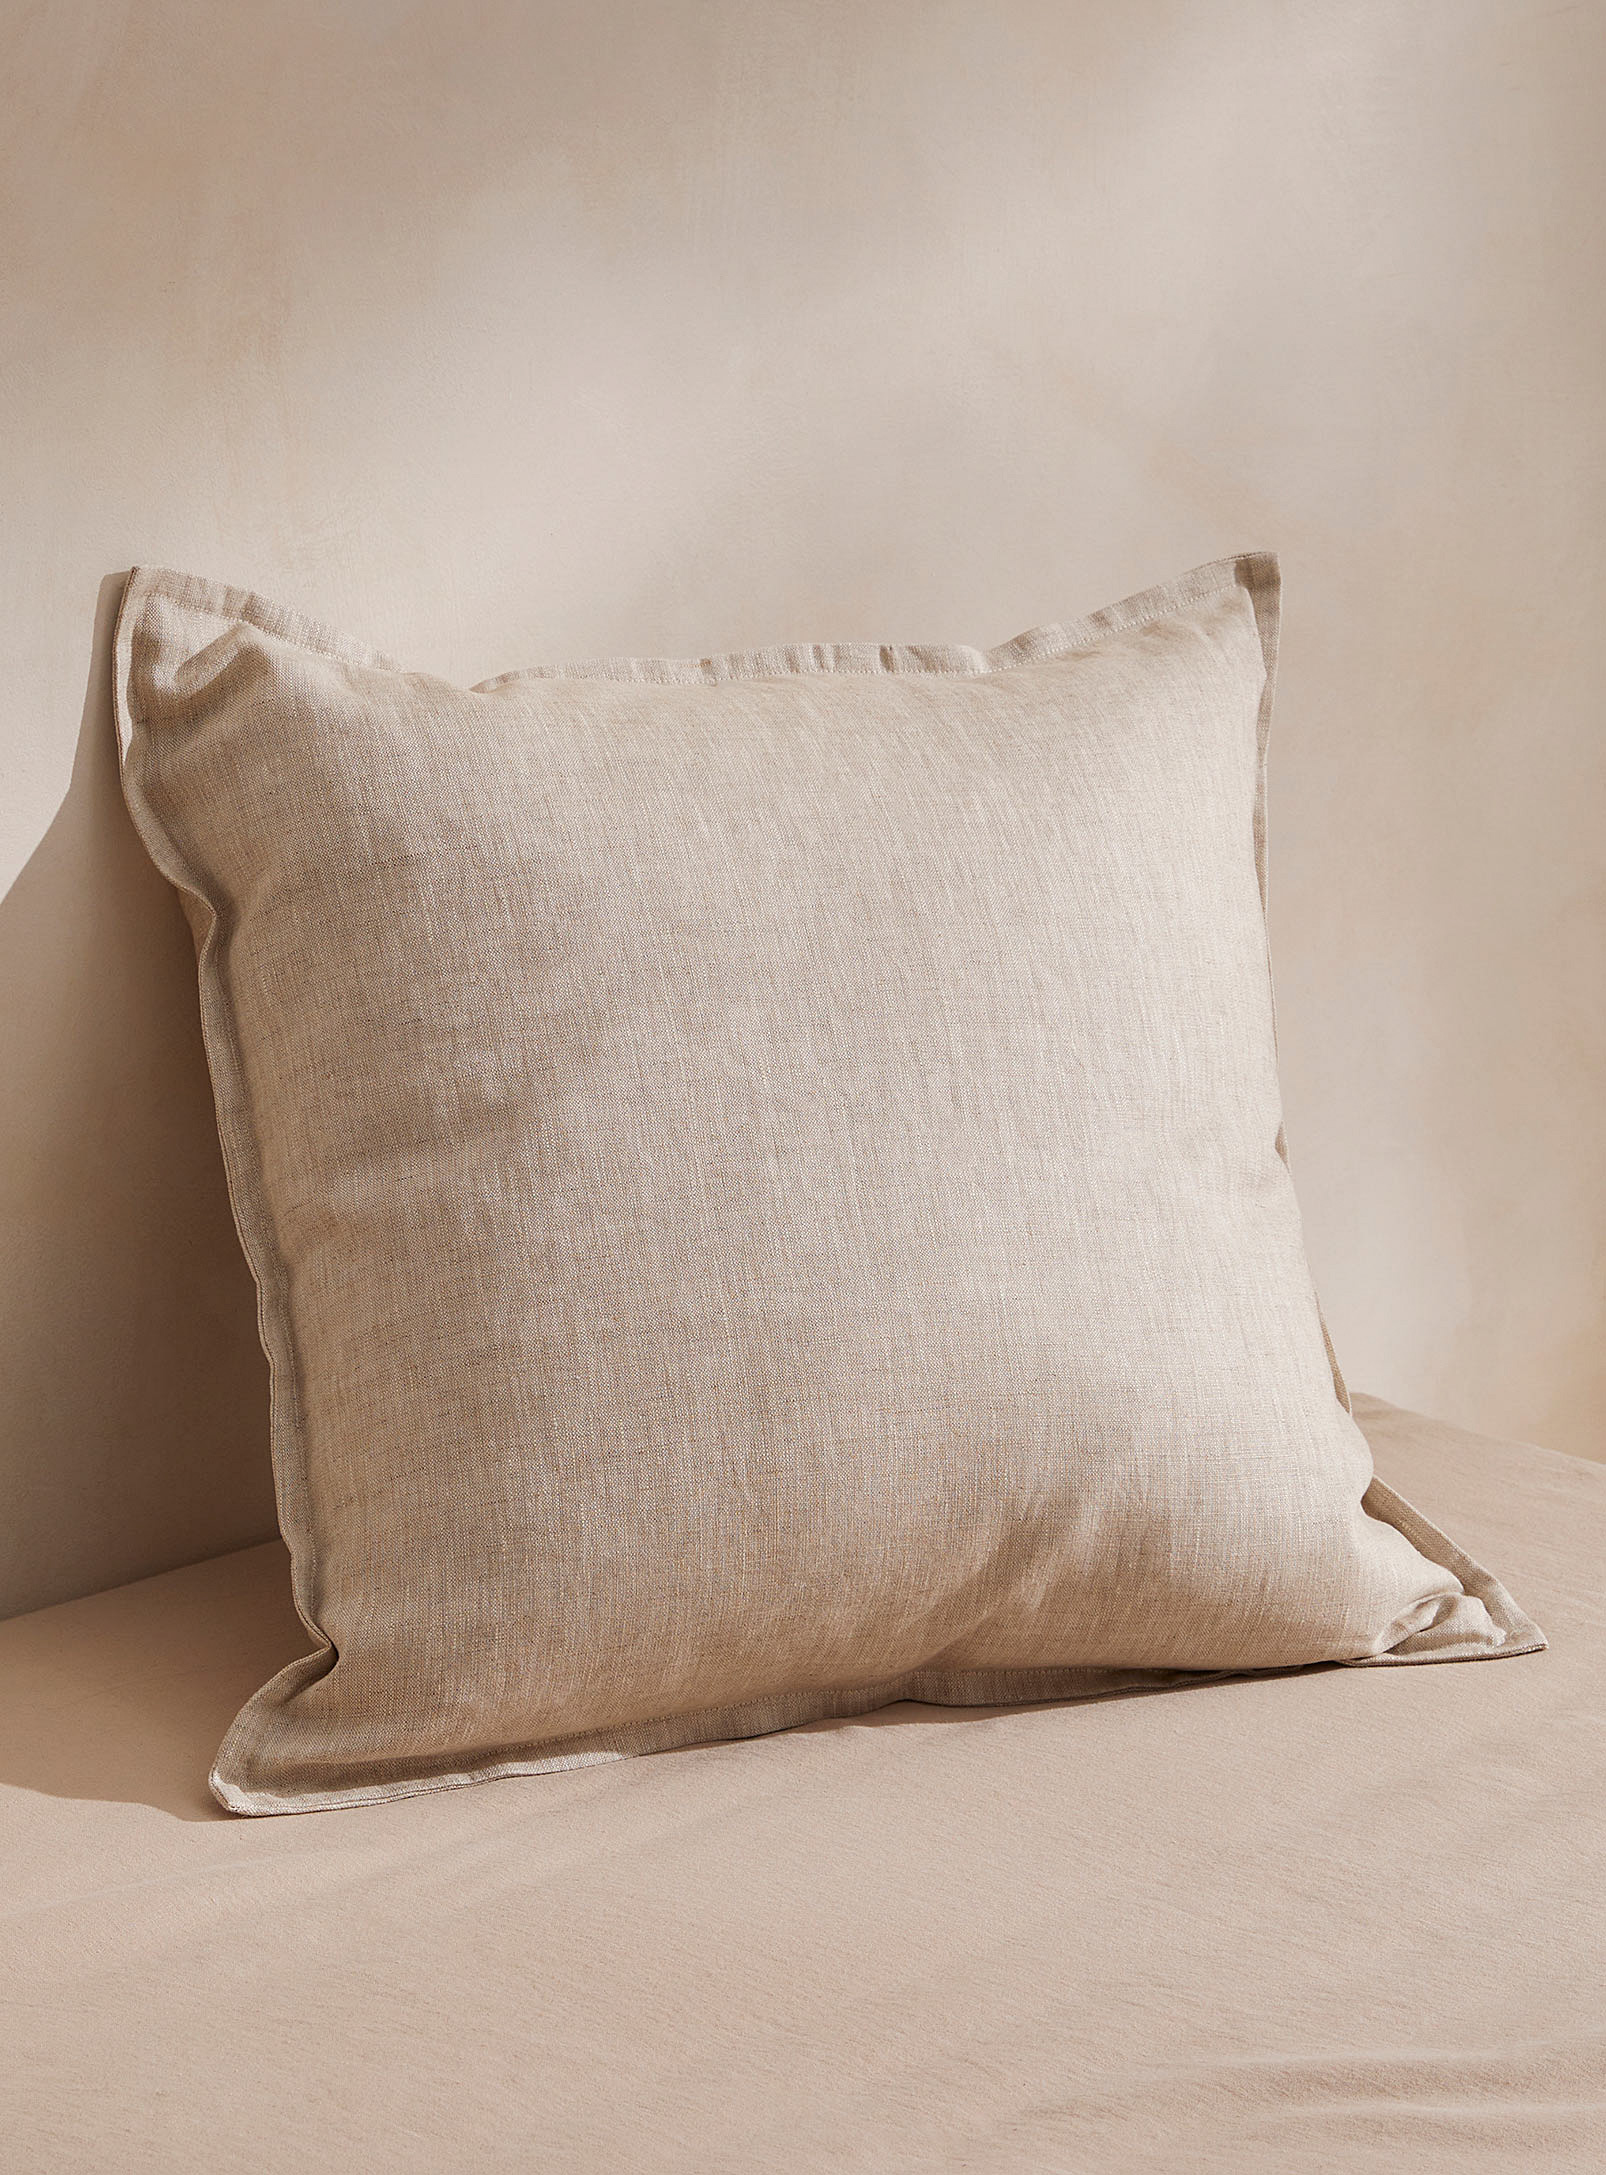 Casannita - Pure linen cushion cover 50.75 x 50.75 cm